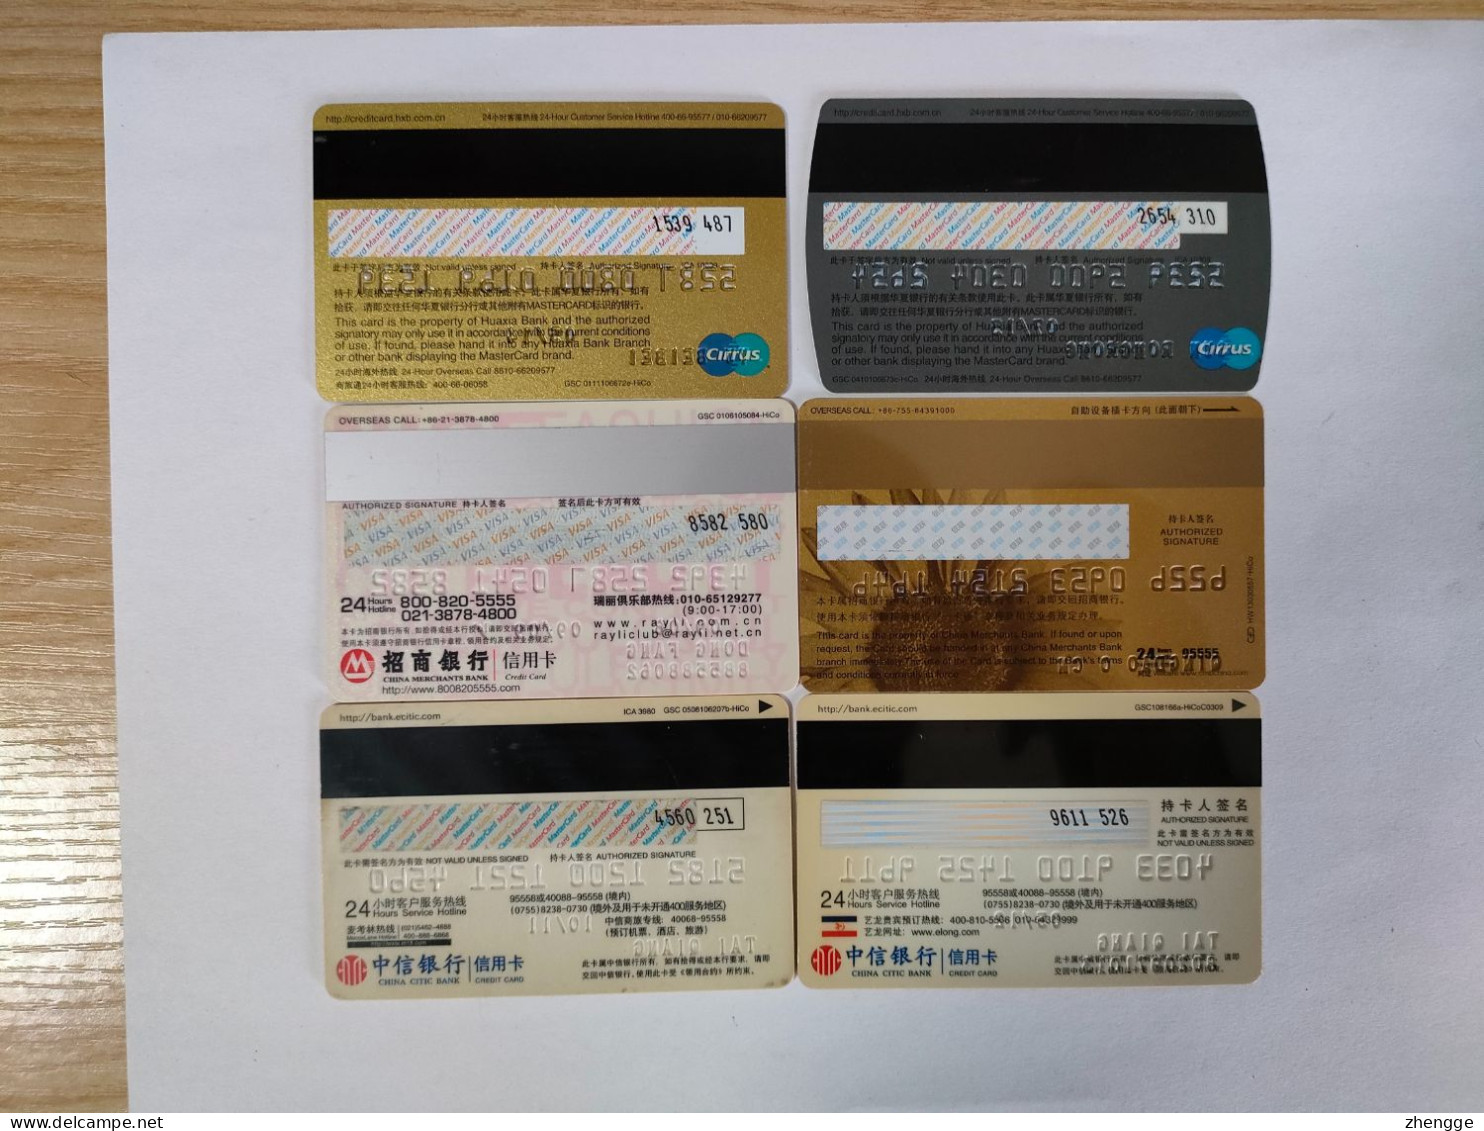 6pcs China Bank Card, - Geldkarten (Ablauf Min. 10 Jahre)